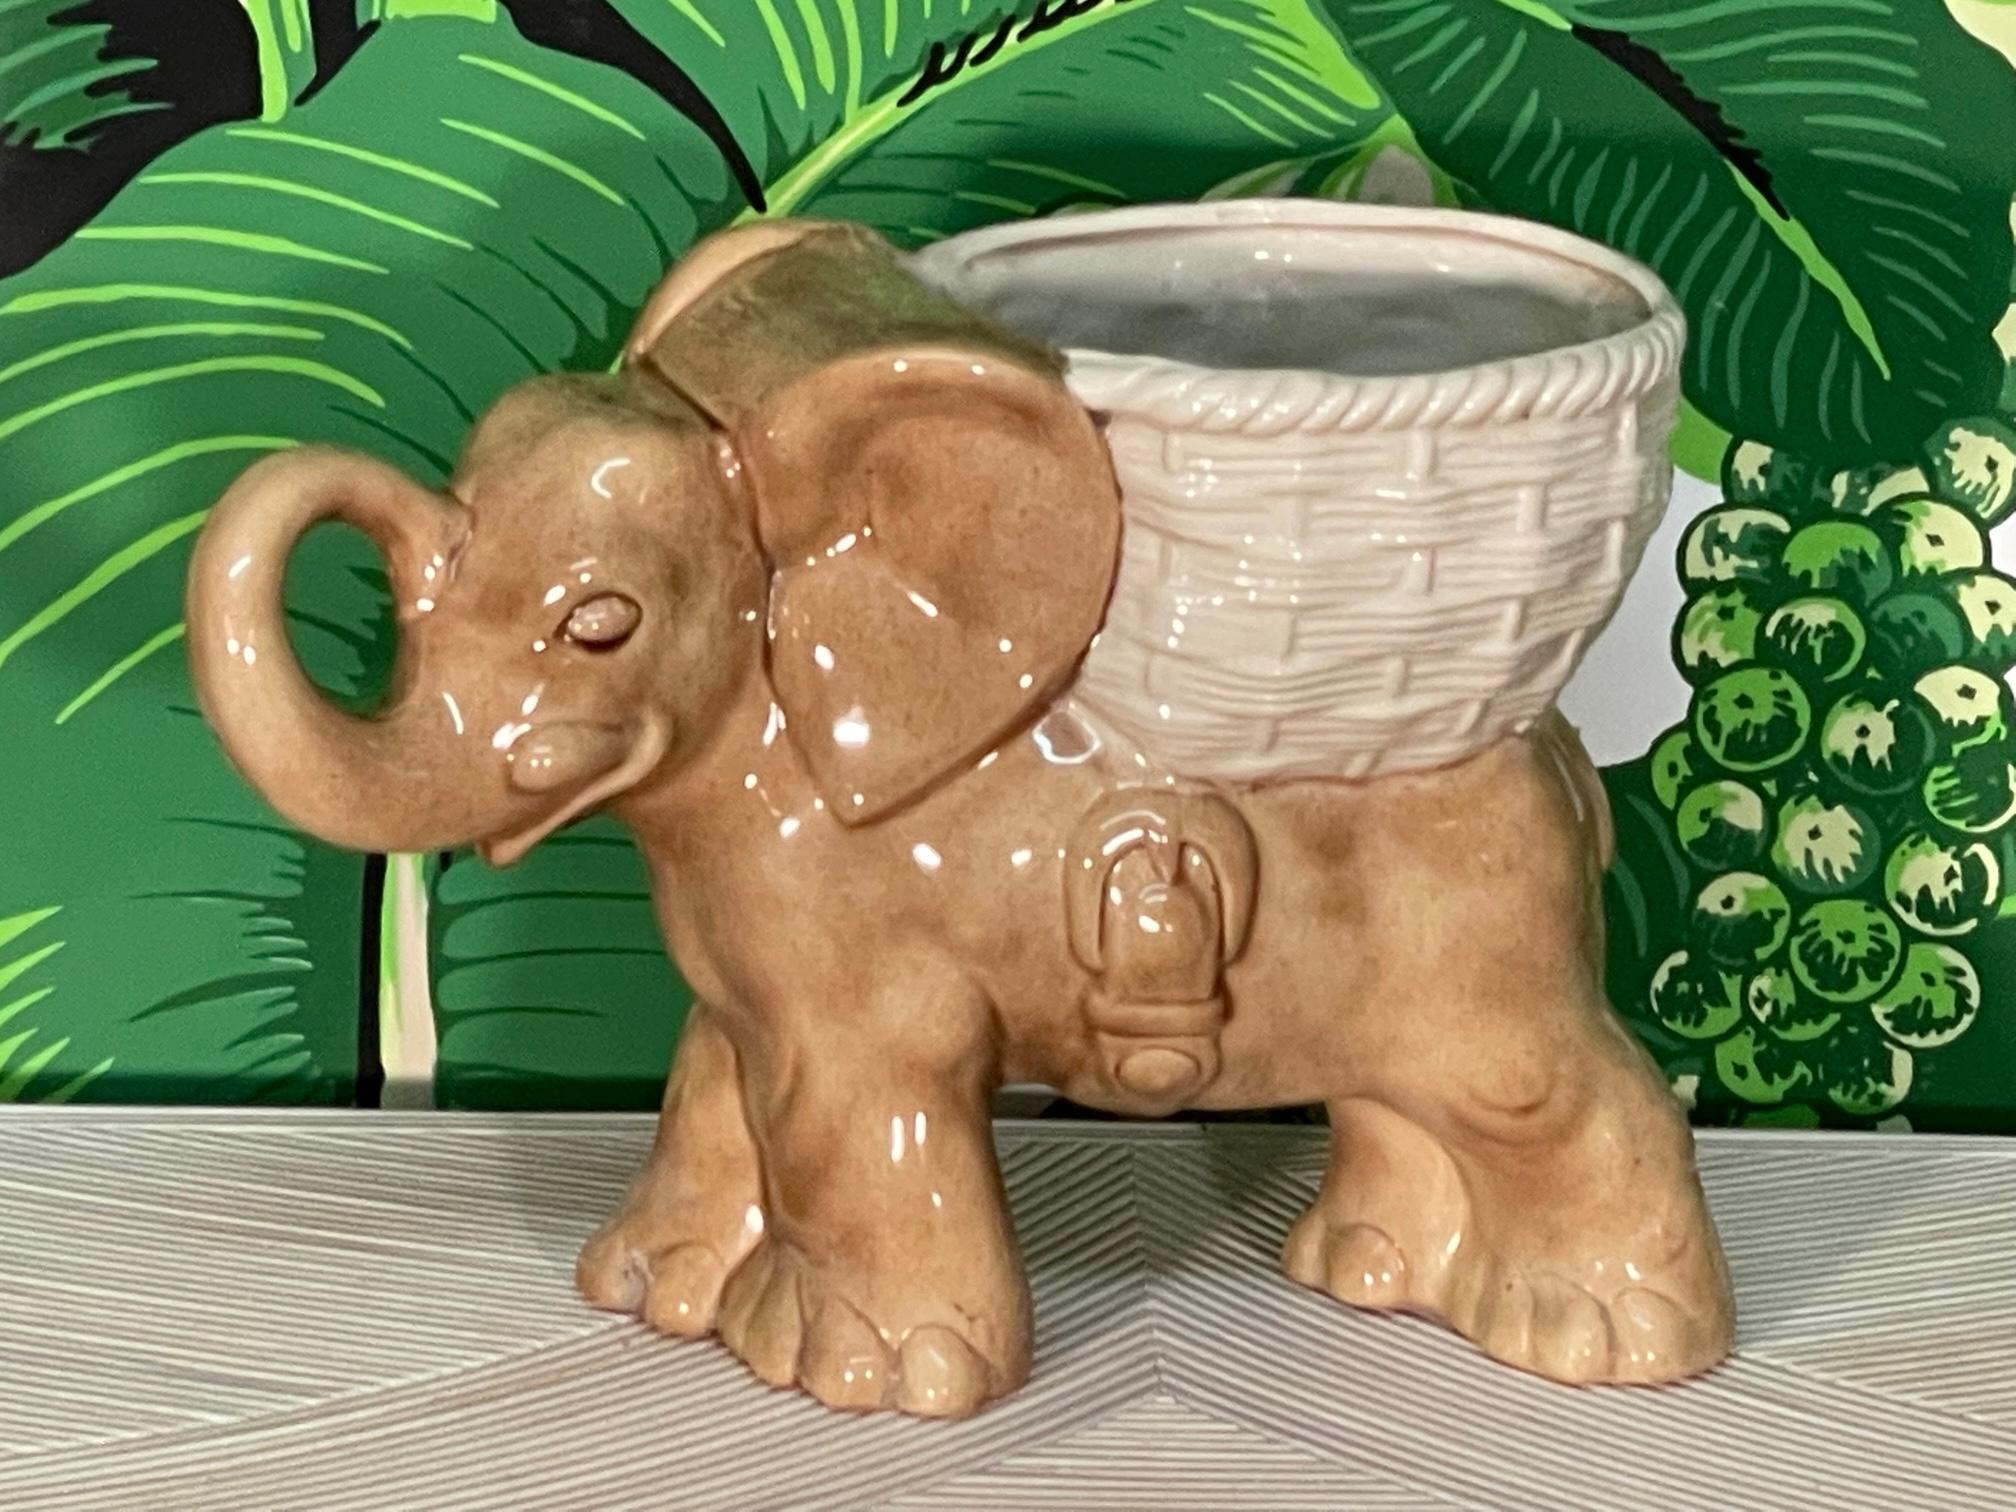 La jardinière éléphant en céramique vintage présente une trompe relevée (pour porter chance !) et une finition émaillée brillante. Très bon état avec seulement des imperfections mineures correspondant à l'âge, voir les photos pour les détails de